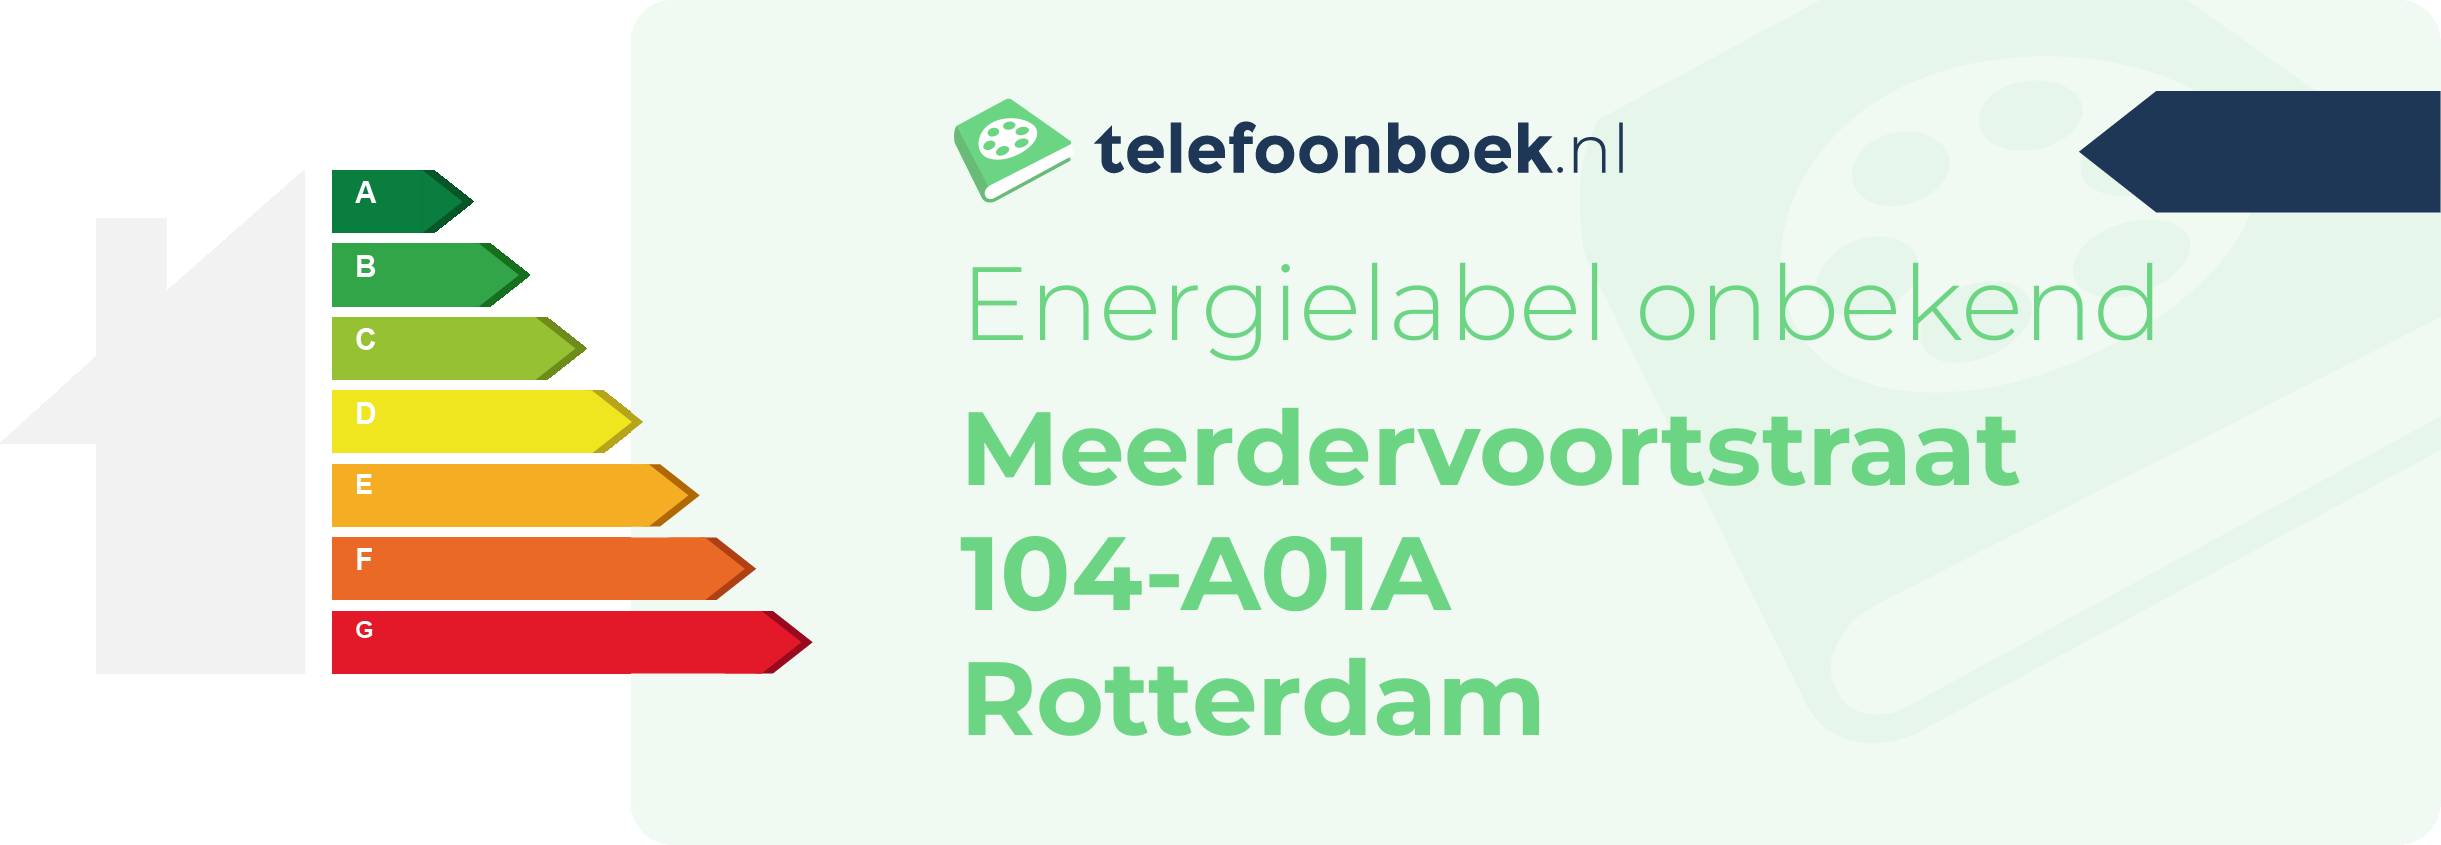 Energielabel Meerdervoortstraat 104-A01A Rotterdam